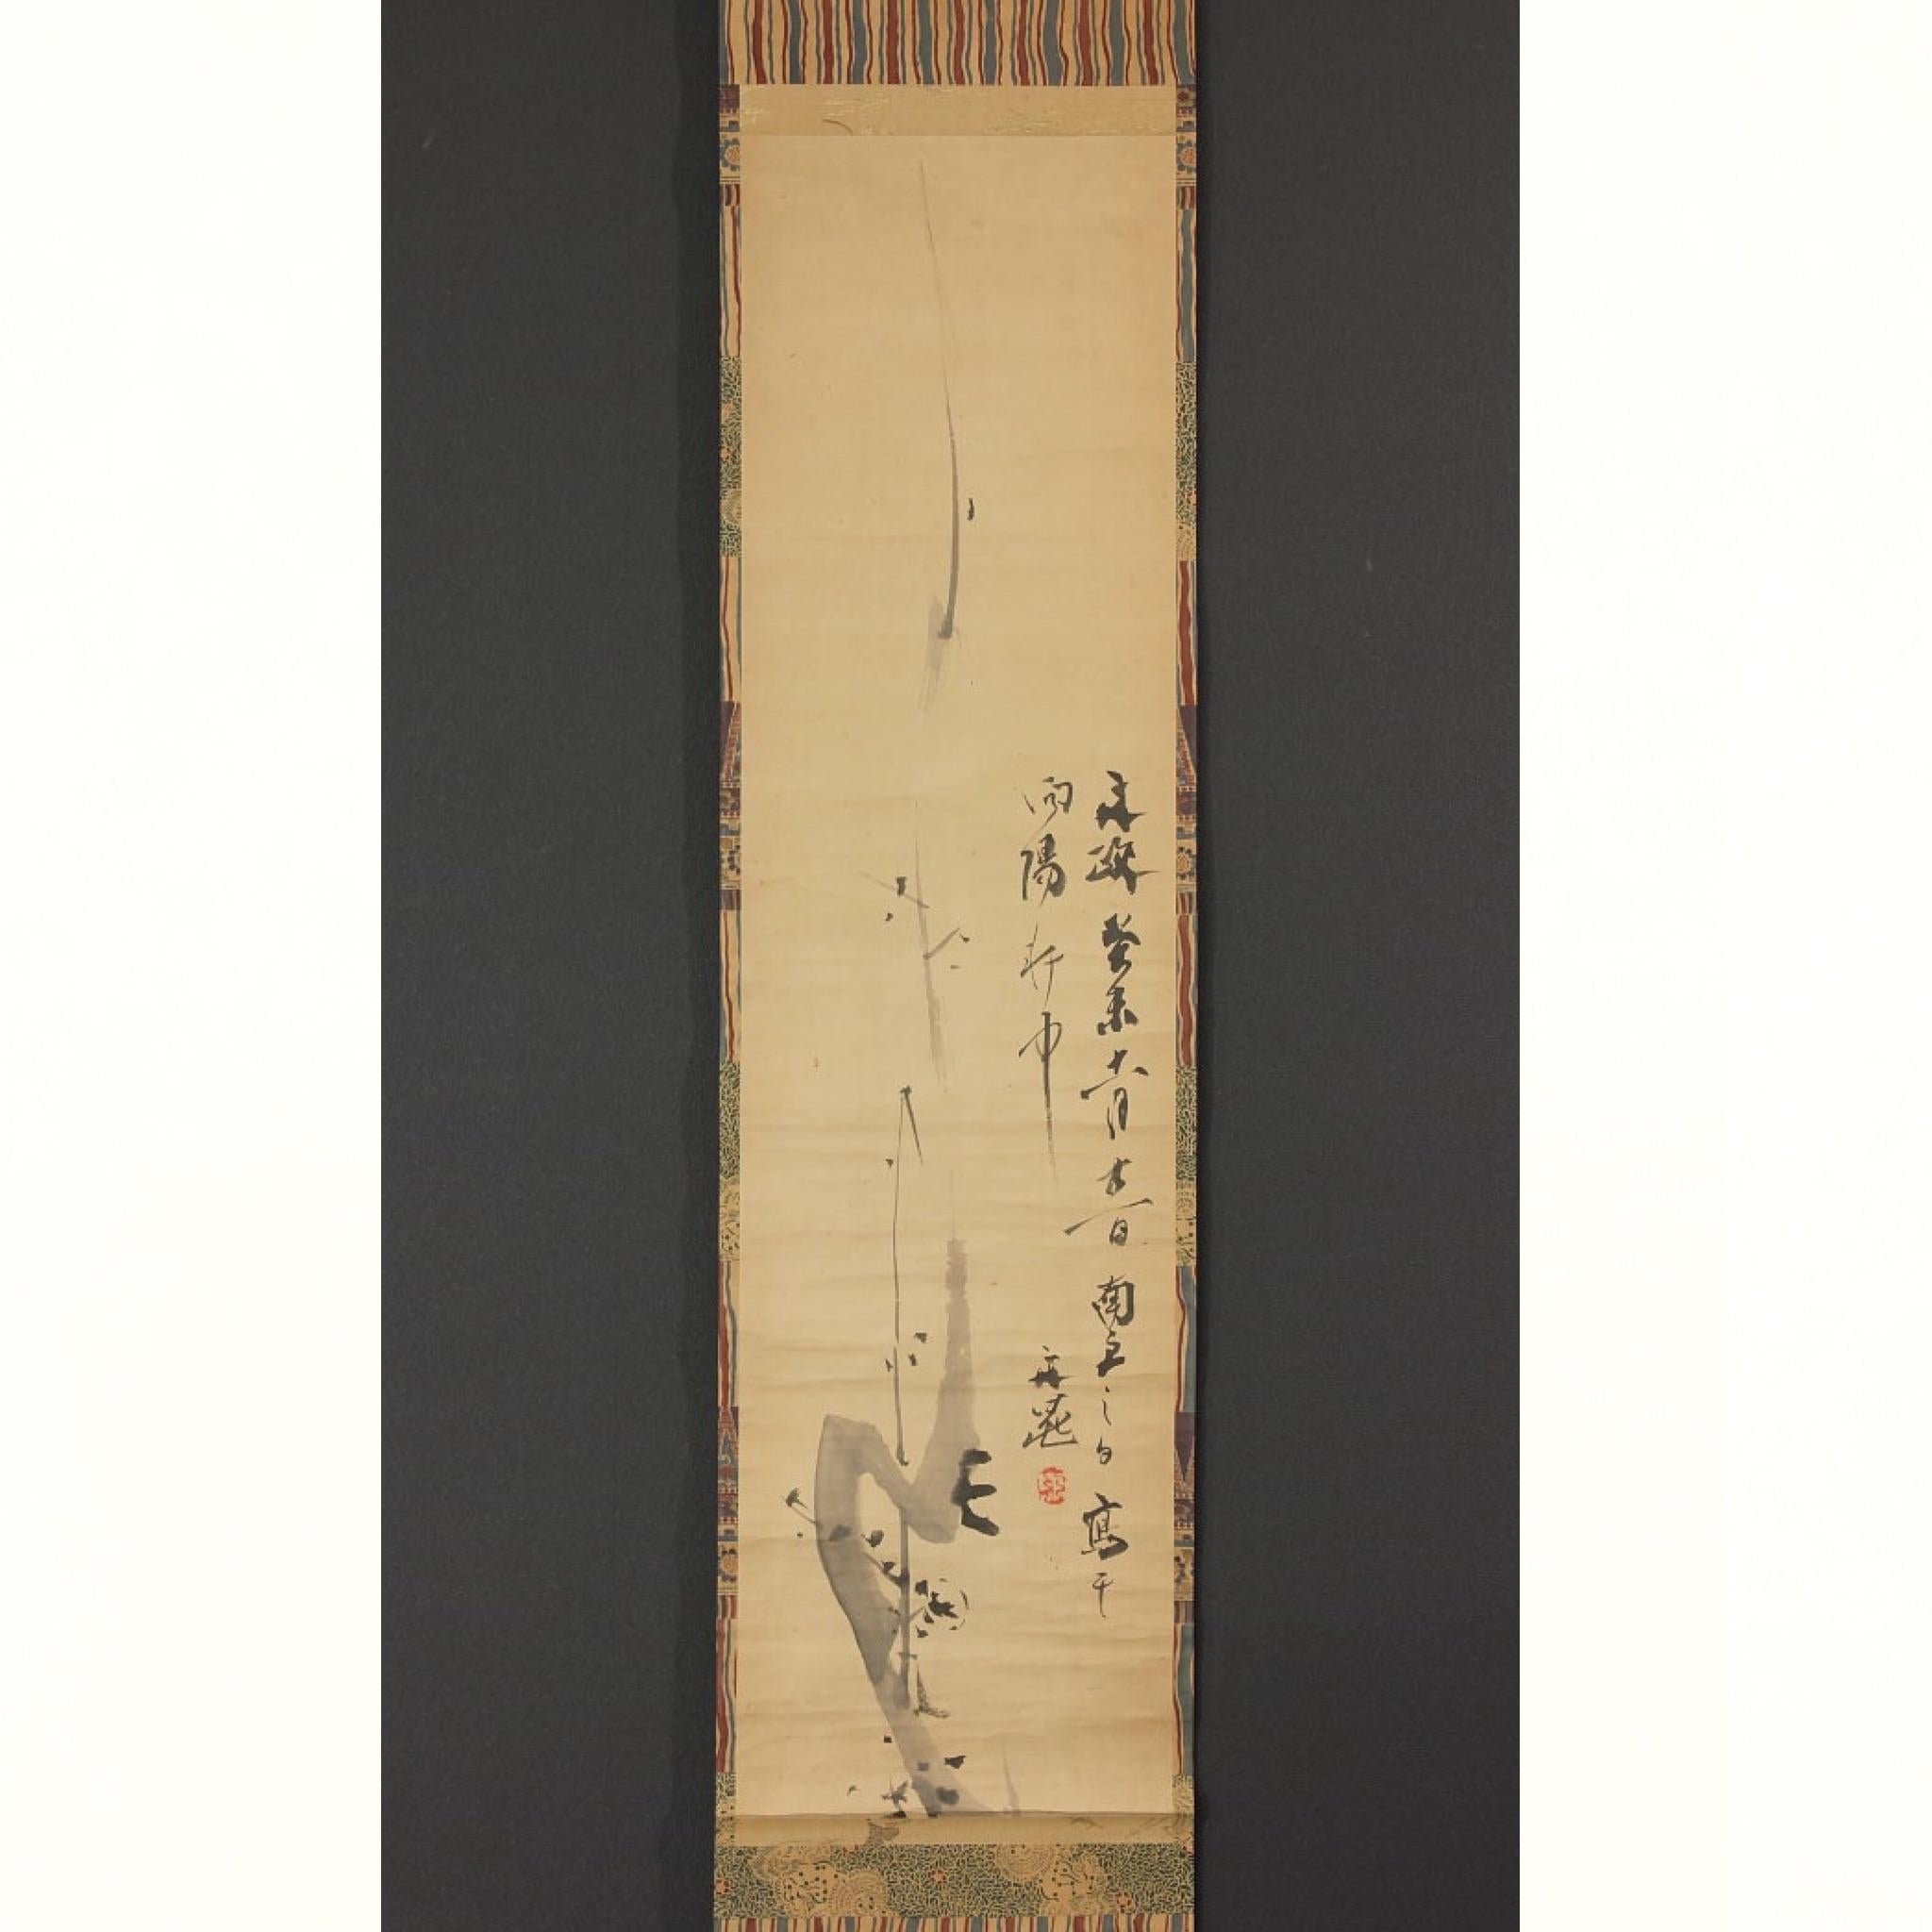 Japanische Tusche auf Papier mit Pflaumenblüten und Gedicht, Rollmontage, Signatur  & einzelnes Siegel: Tani Buncho (1763 - 1840). Ein berühmter und produktiver Literatenmaler (bunjin) und Dichter, der sich hauptsächlich auf chinesisch inspirierte